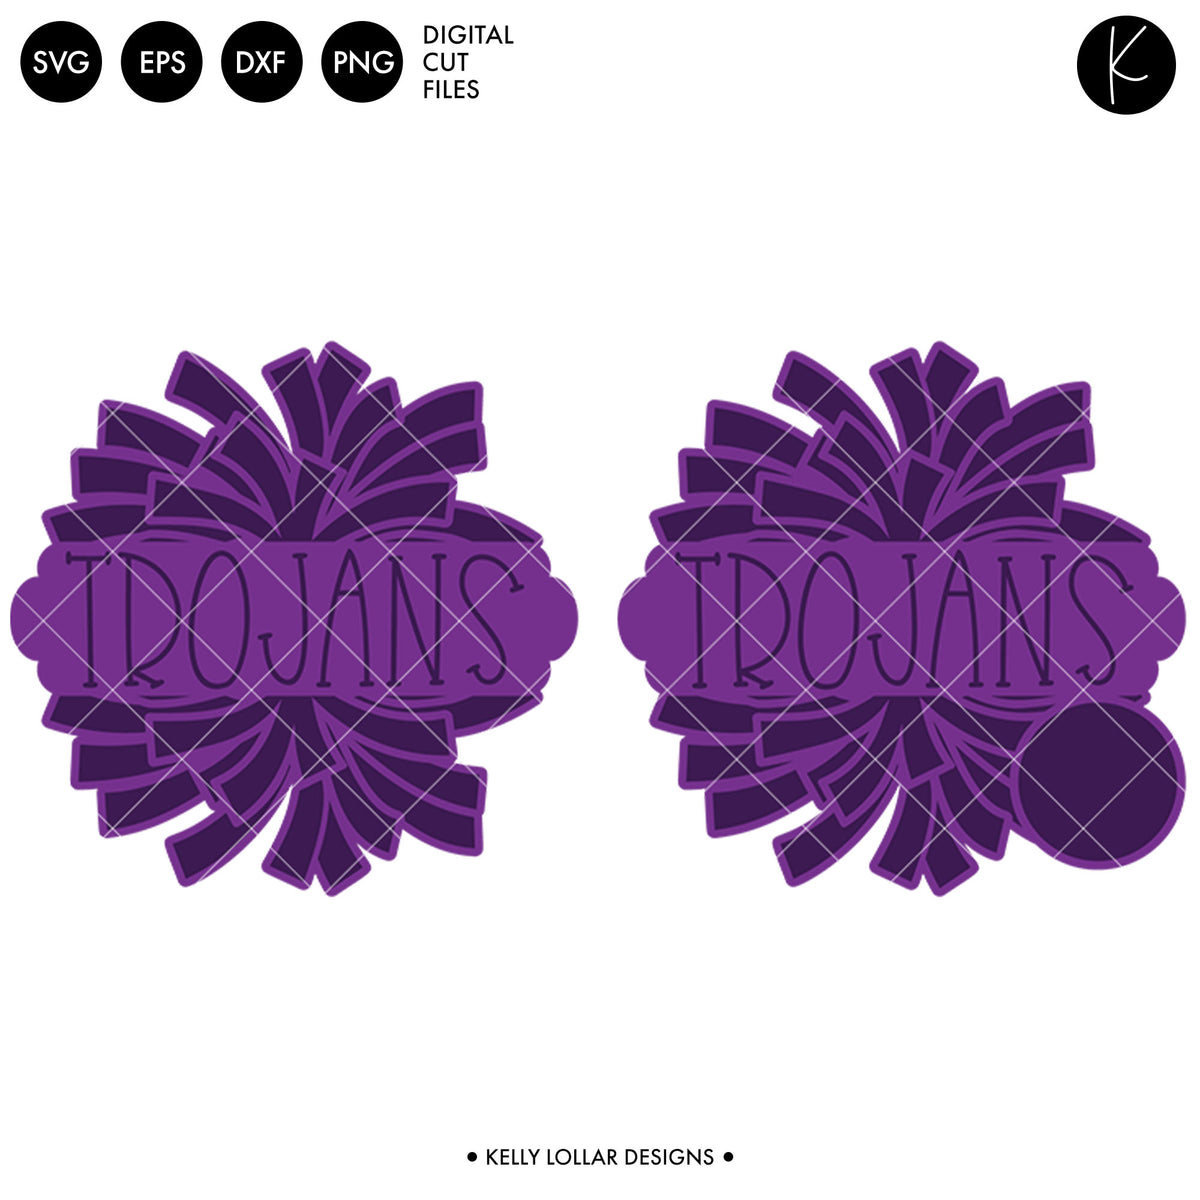 Trojans Dance Bundle | SVG DXF EPS PNG Cut Files